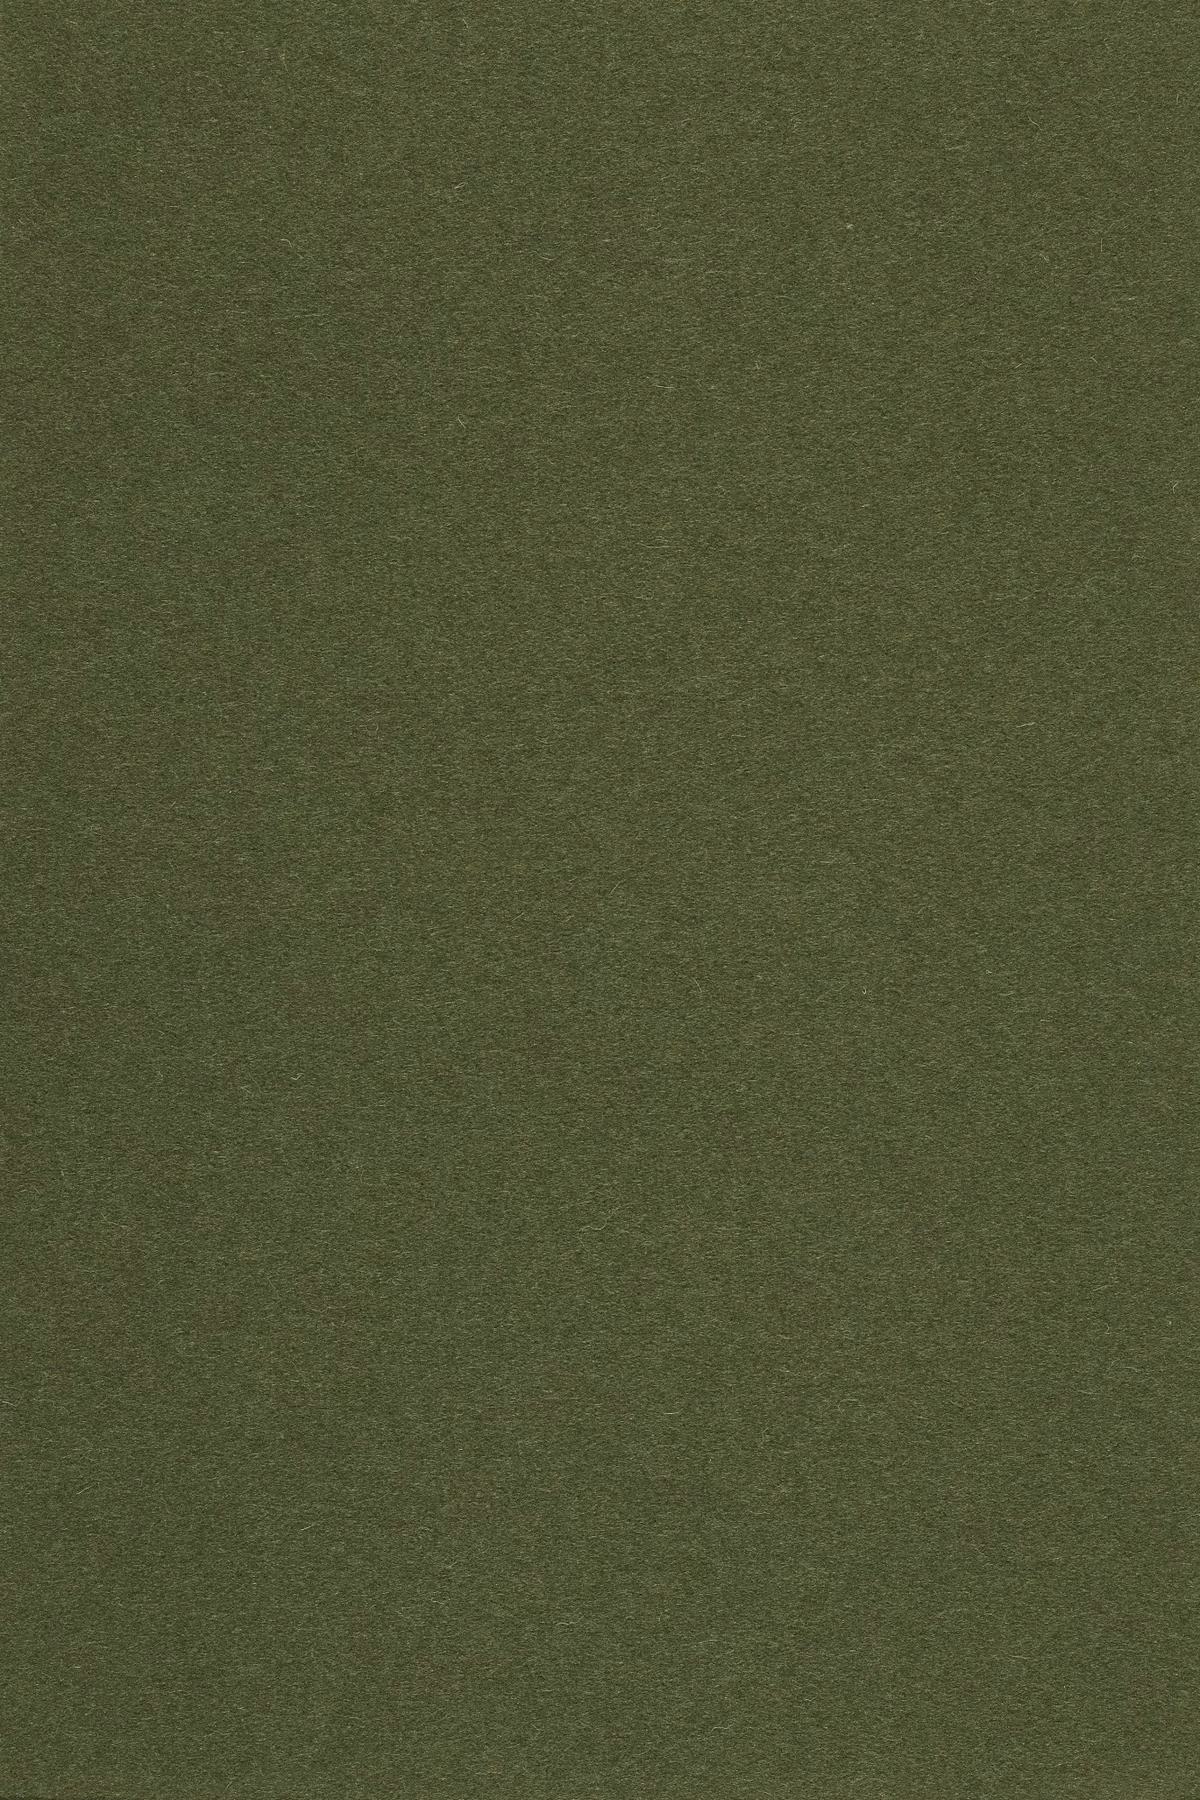 Fabric sample Divina 3 984 green